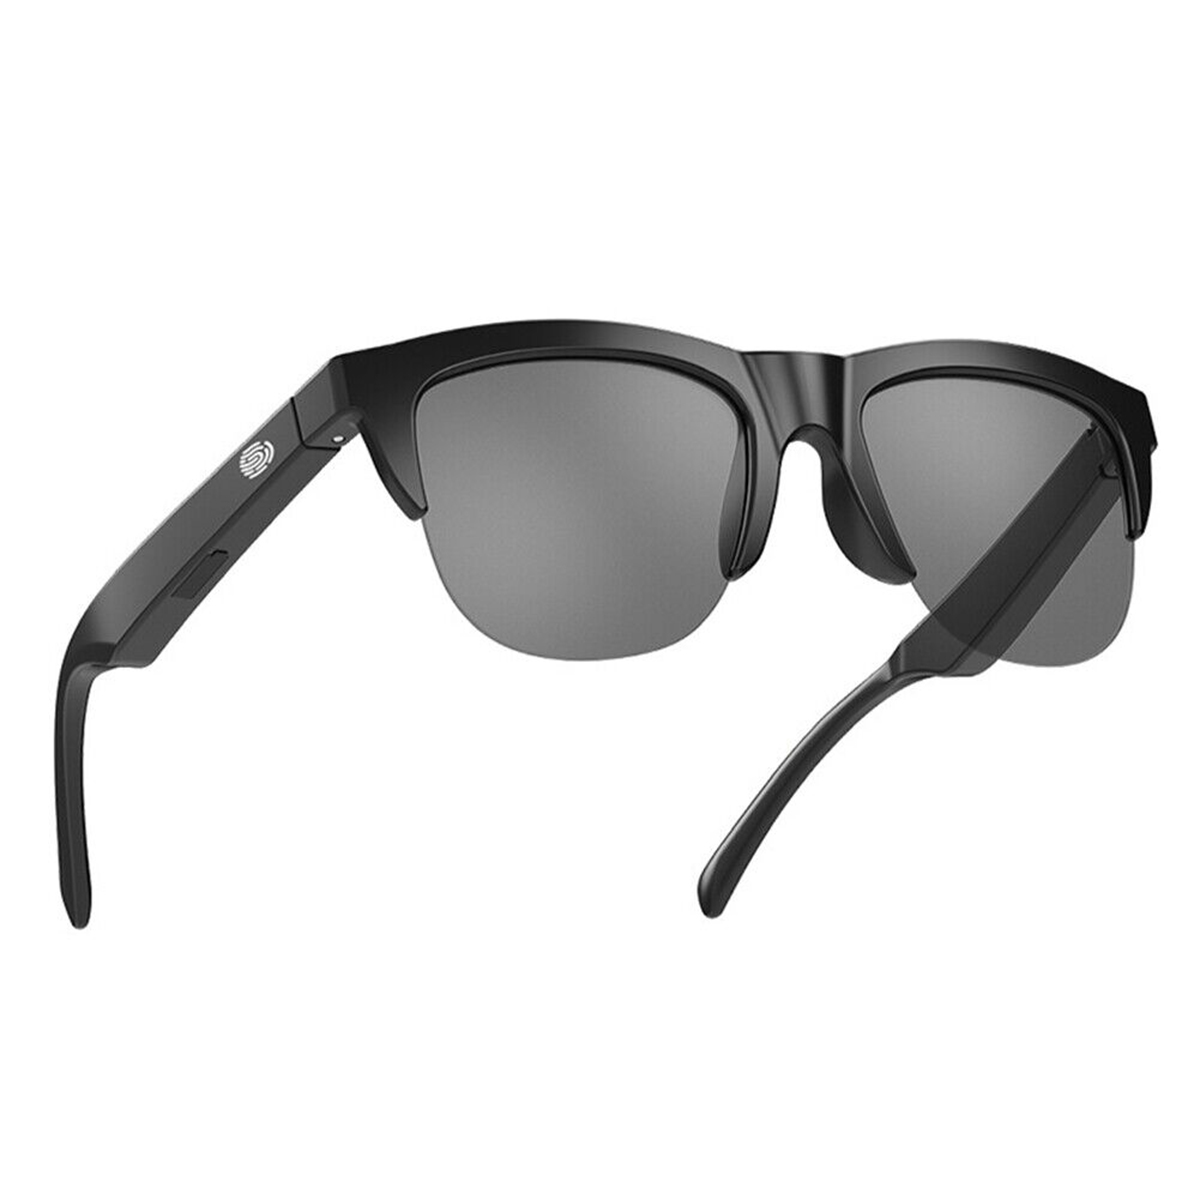 Klack® Anti-uv Smart Glasses Com Altifalante De Toque Estéreo Duplo E Som Hifi